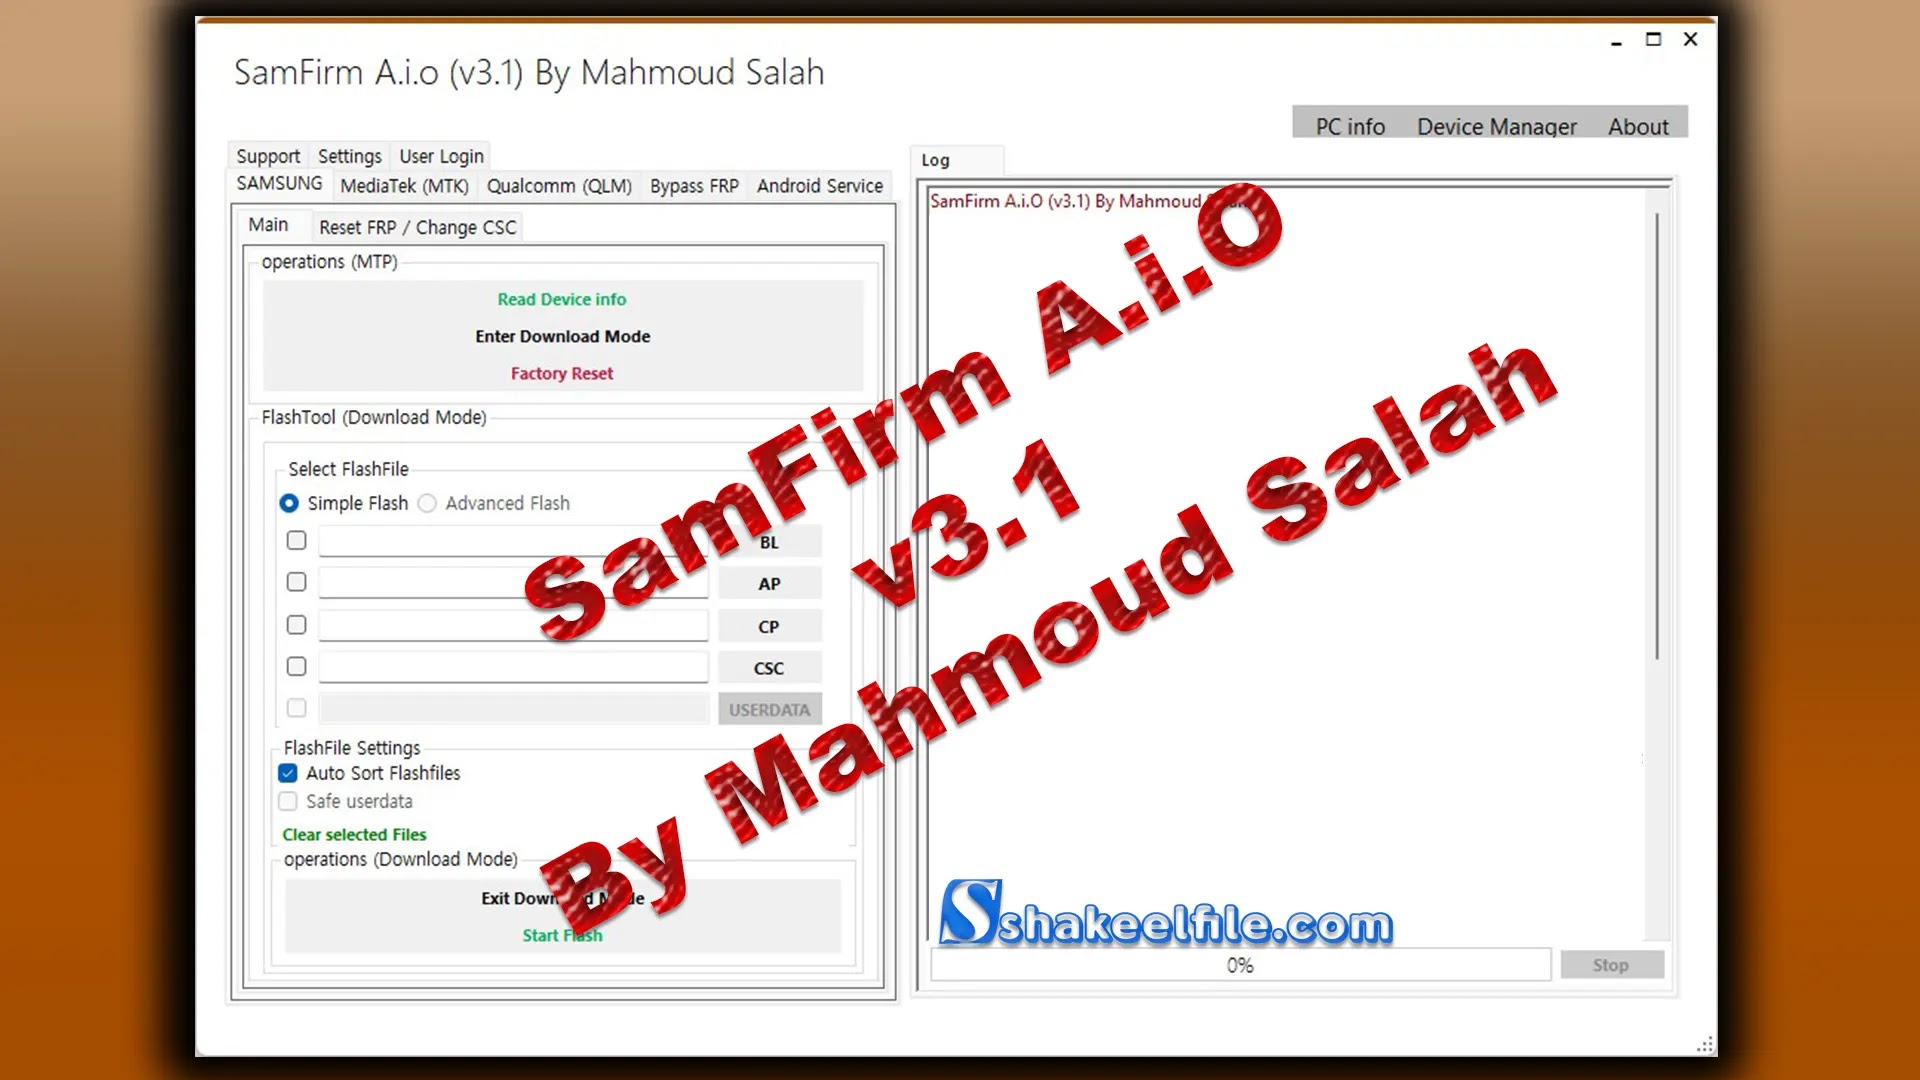 SamFirm-A-i-O-v3-1-By-Mahmoud-Salah